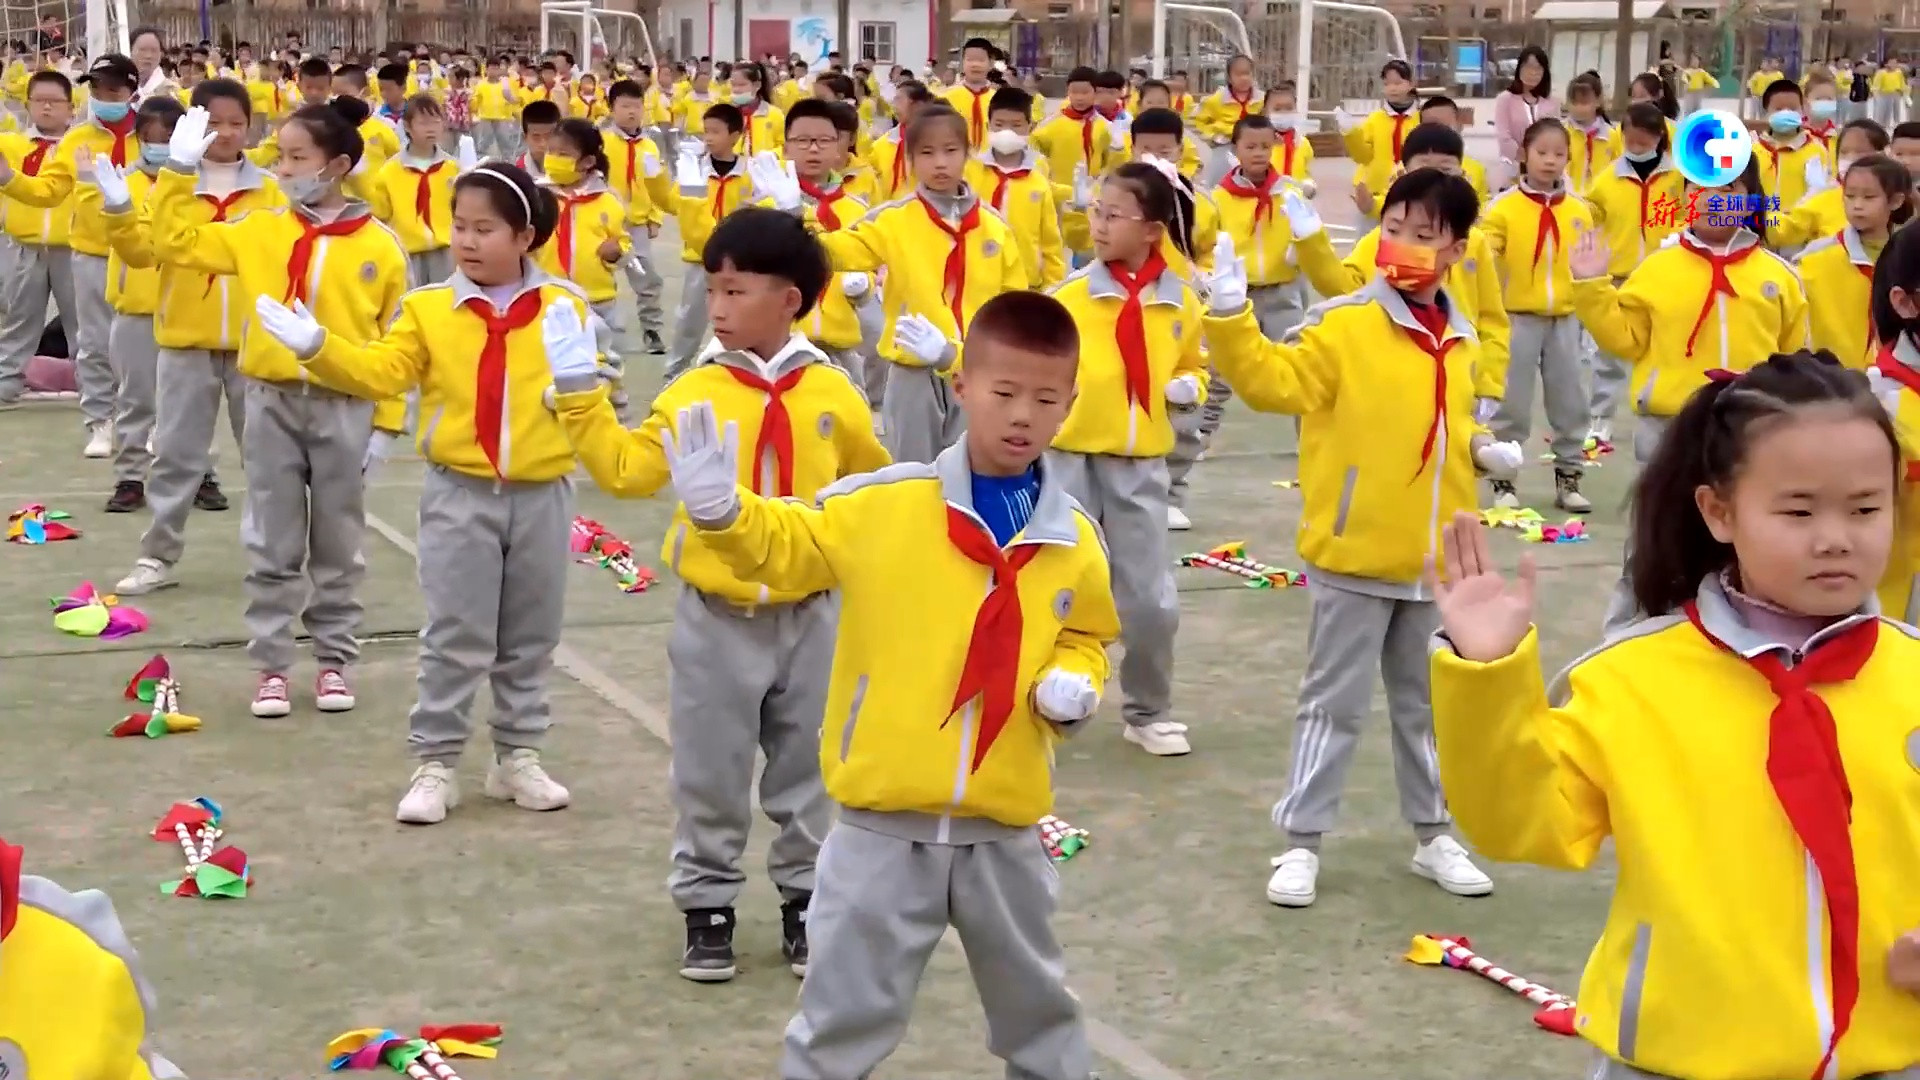 全球连线|“中西合璧”让中国学生的体育锻炼更有趣